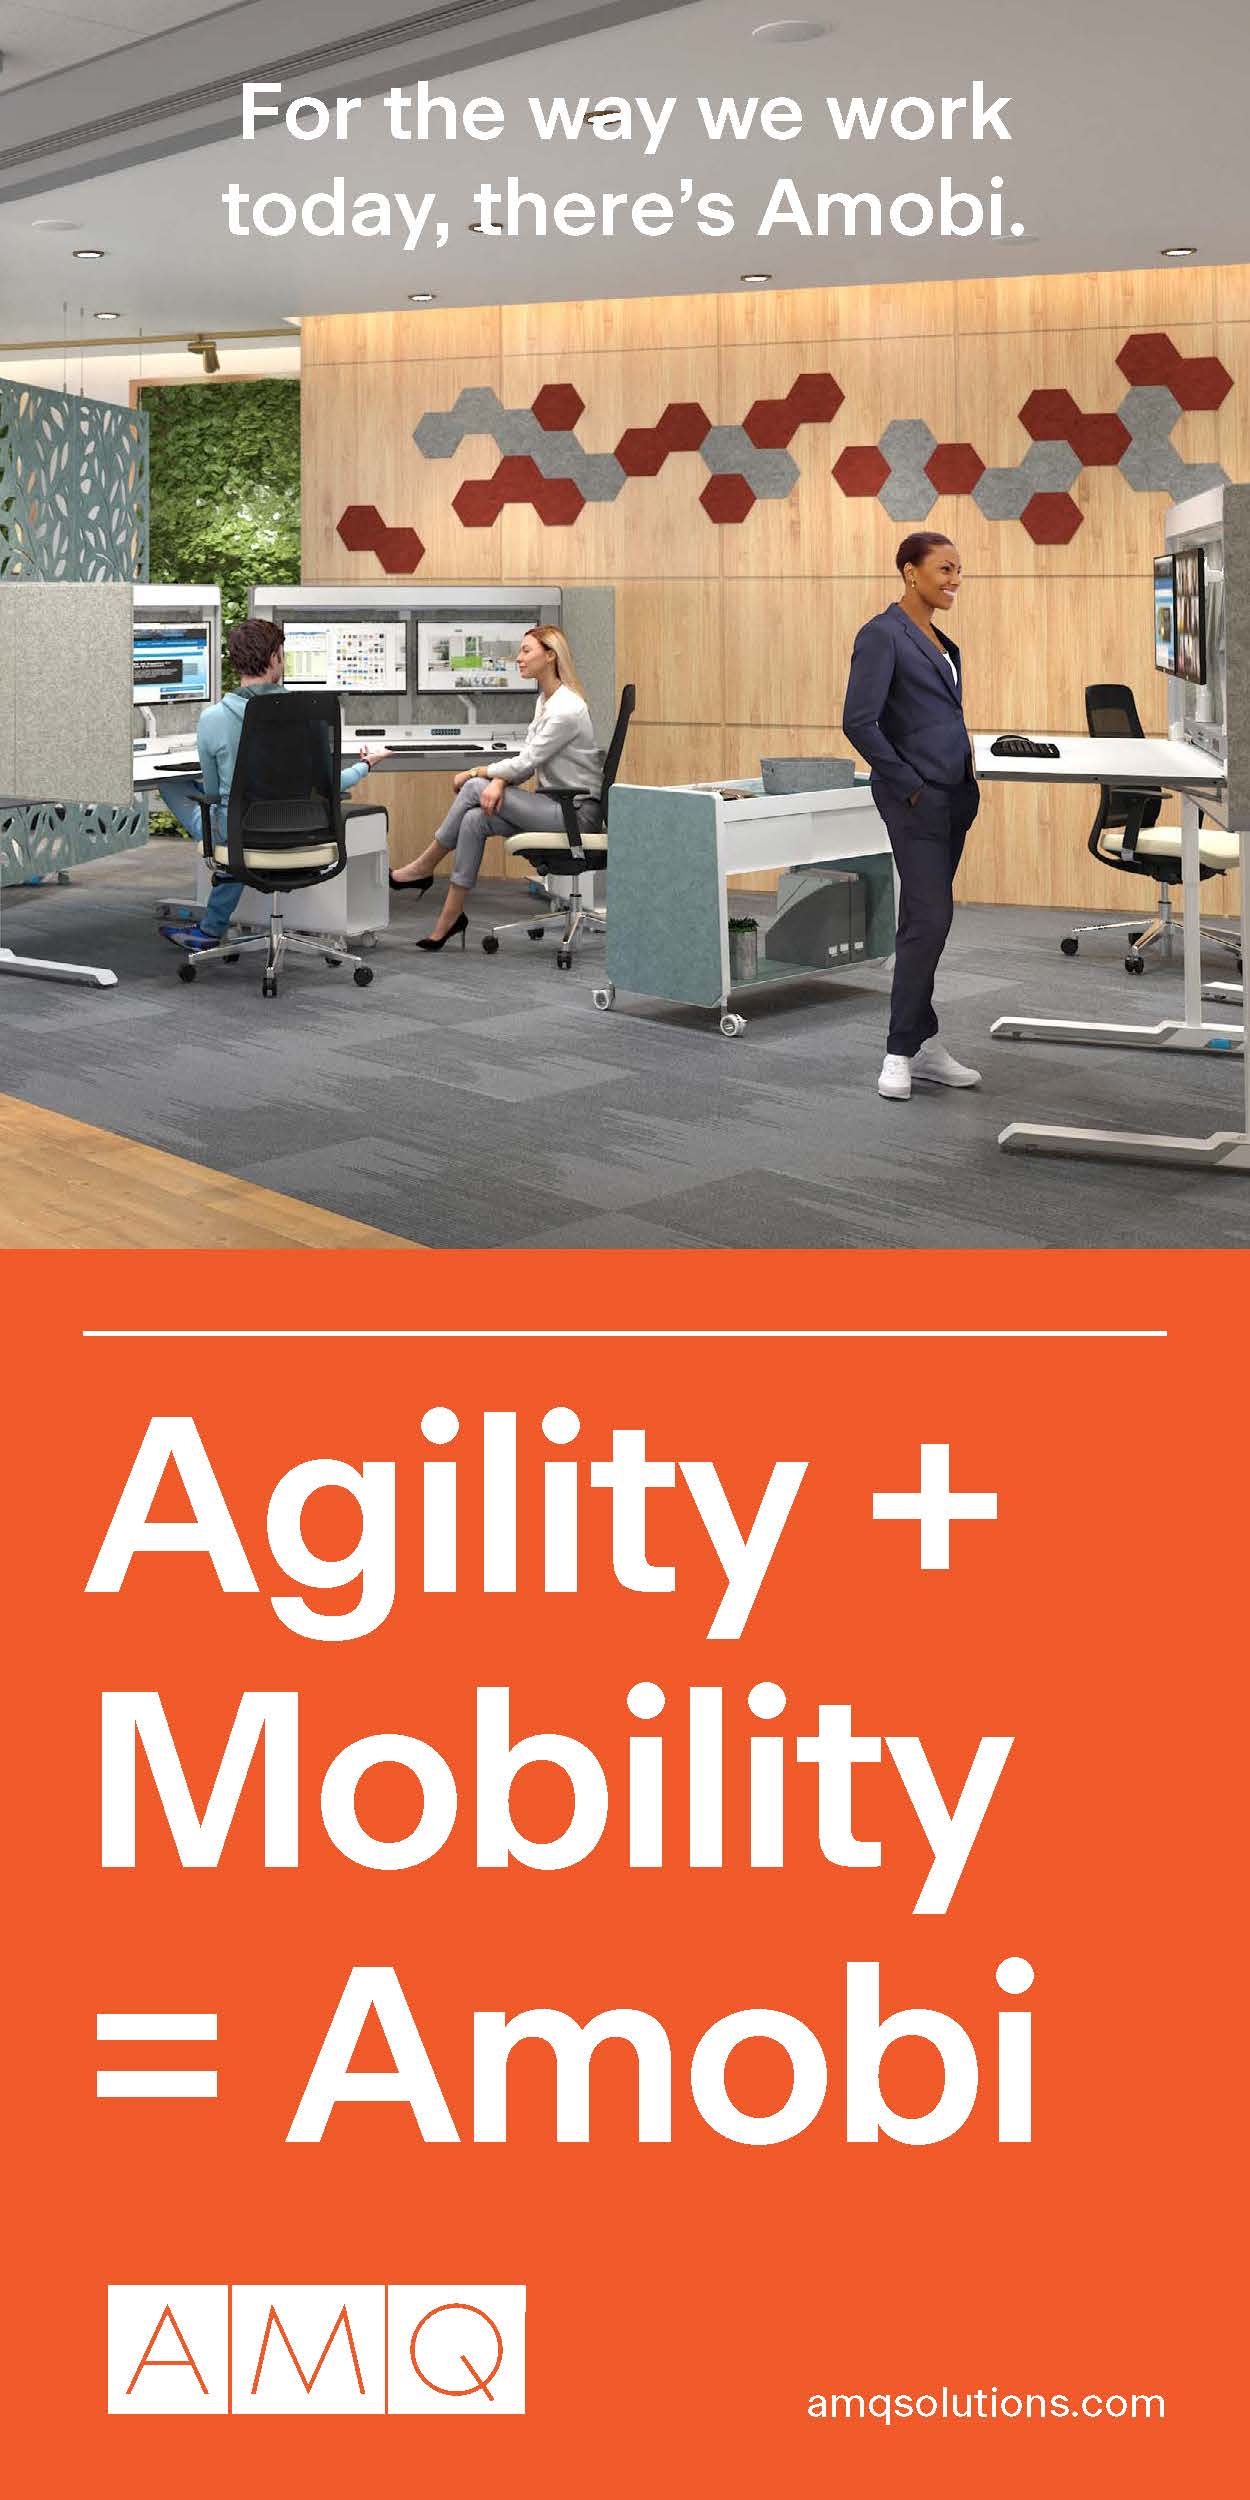 AMQ – Amobi: Mobility+Agility